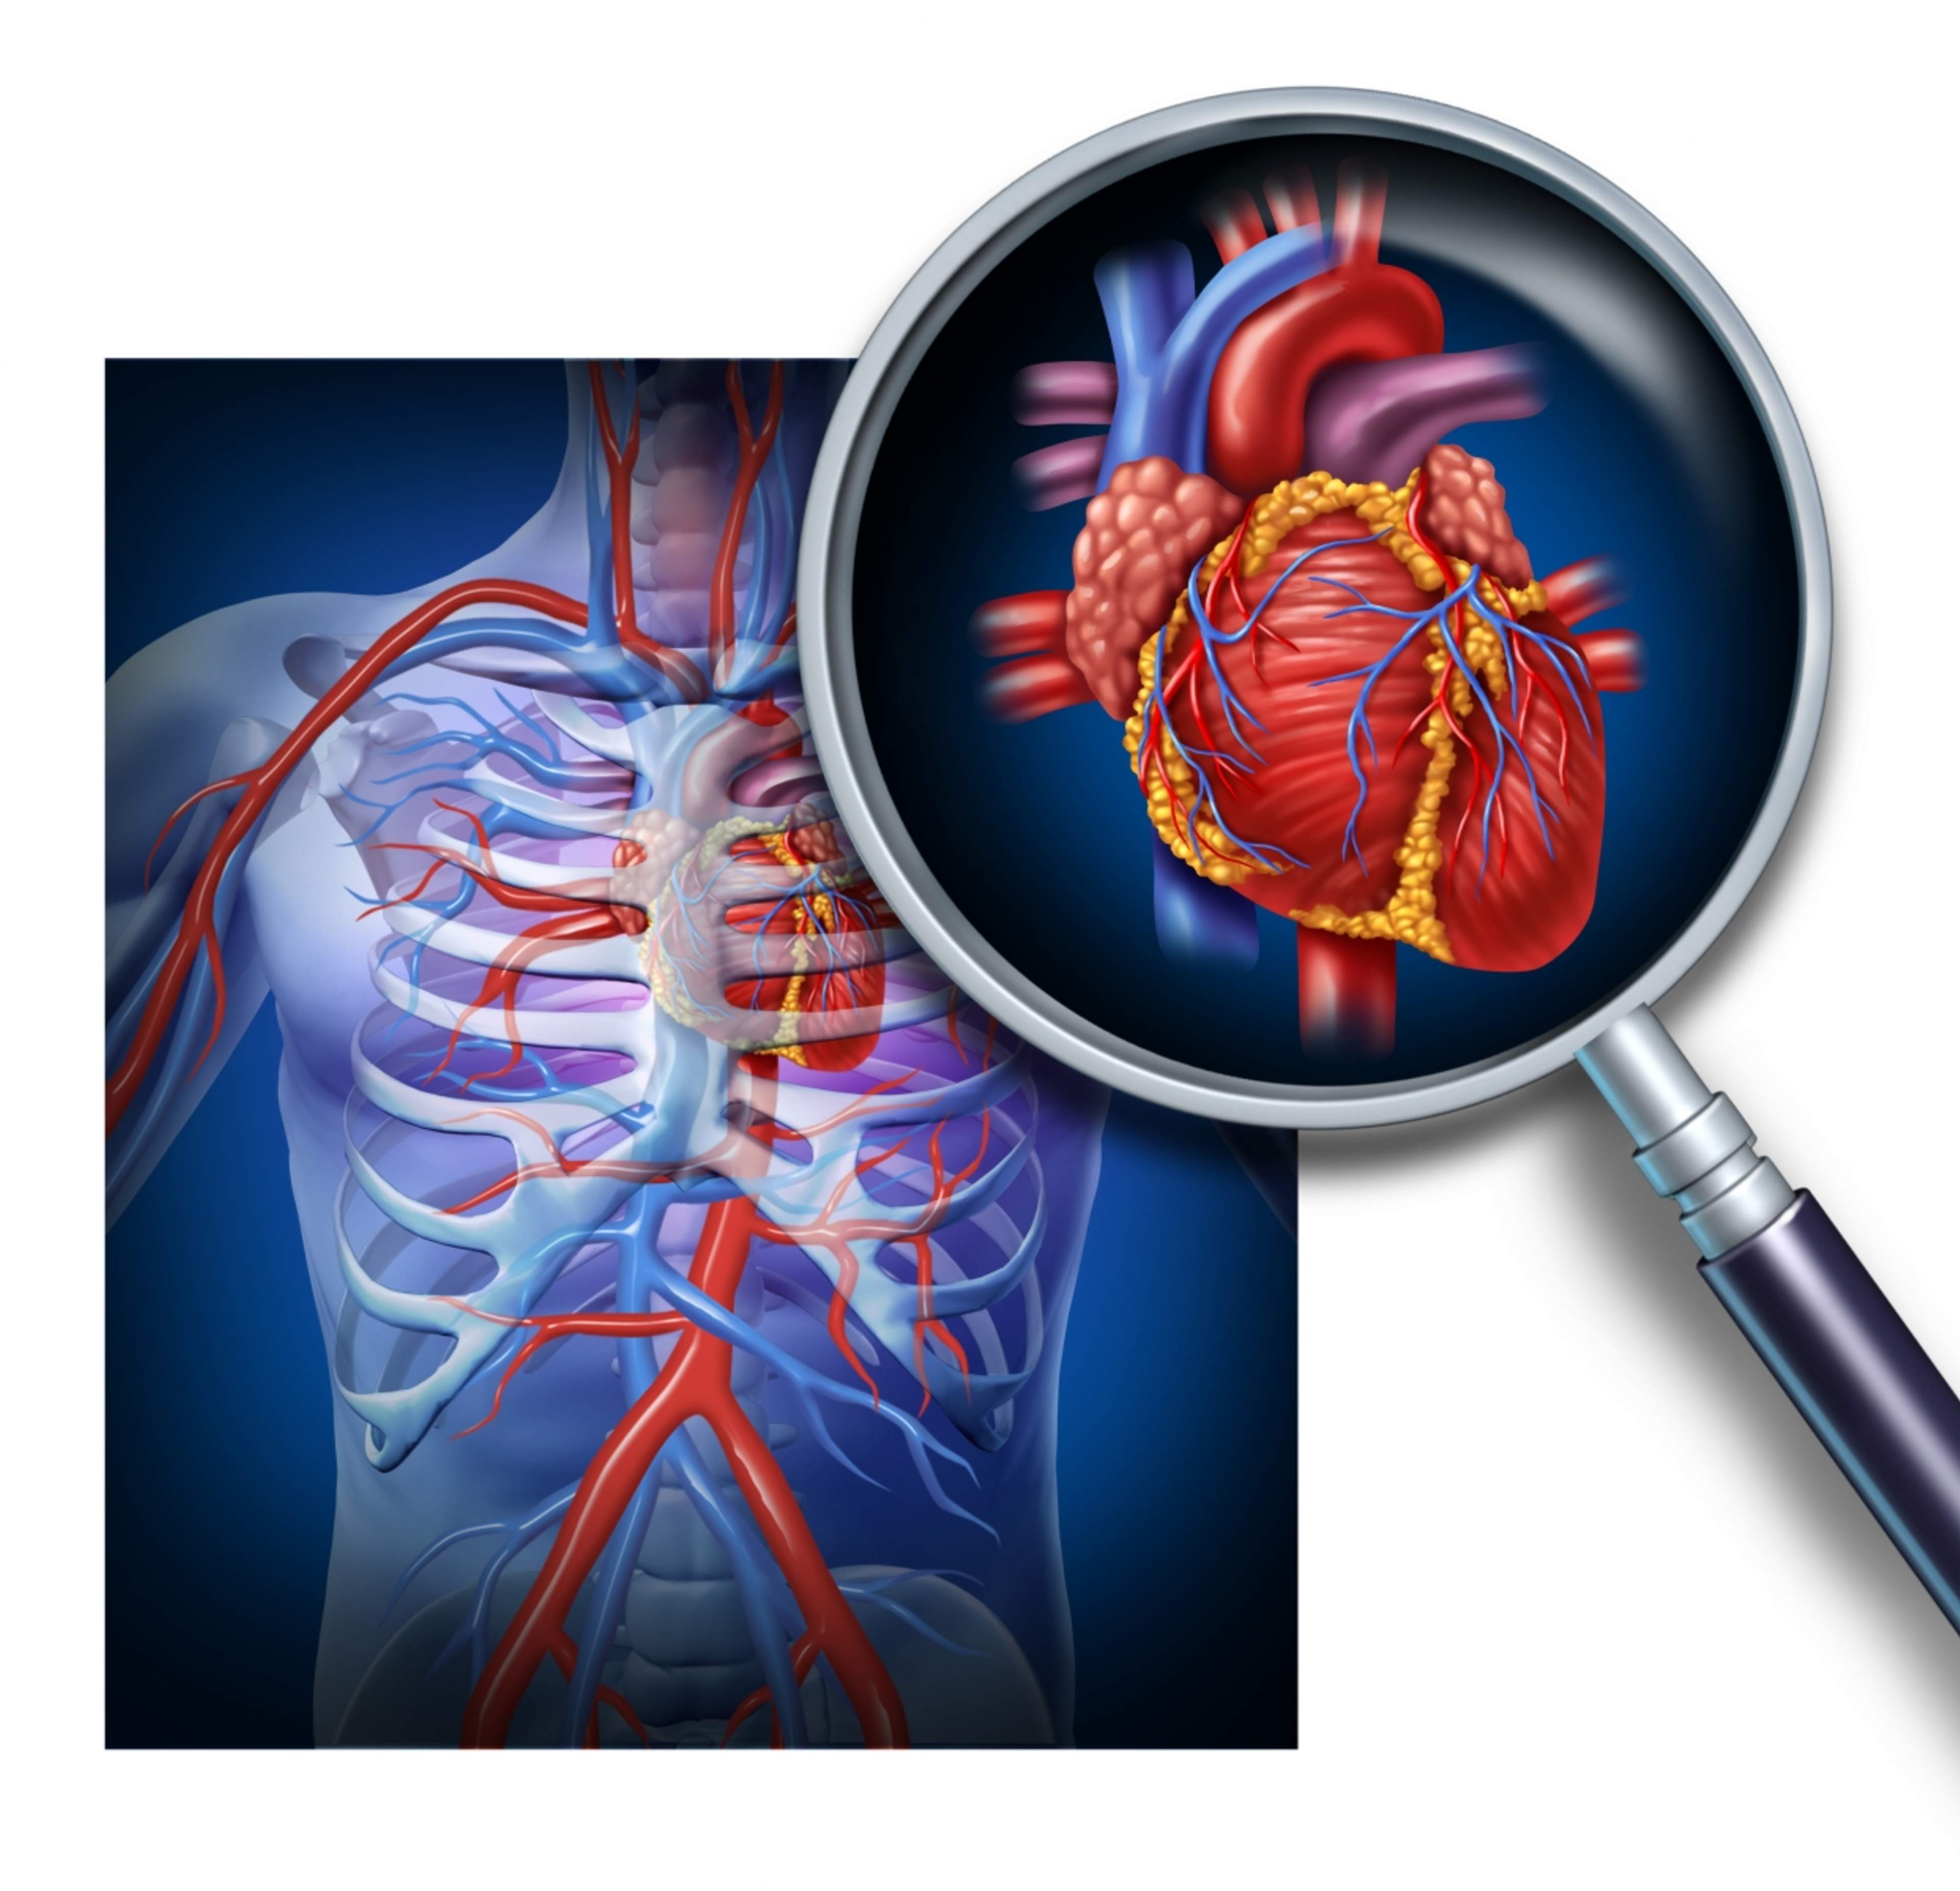 Kuvassa sydän ja sydämen verisuonet, joihin ylimääräinen kolesteroli kertyy johtaen suonien ahtautumiseen ja sydämen hapensaannin heikkenemiseen, joka synnyttää sepelvaltimotaudin.